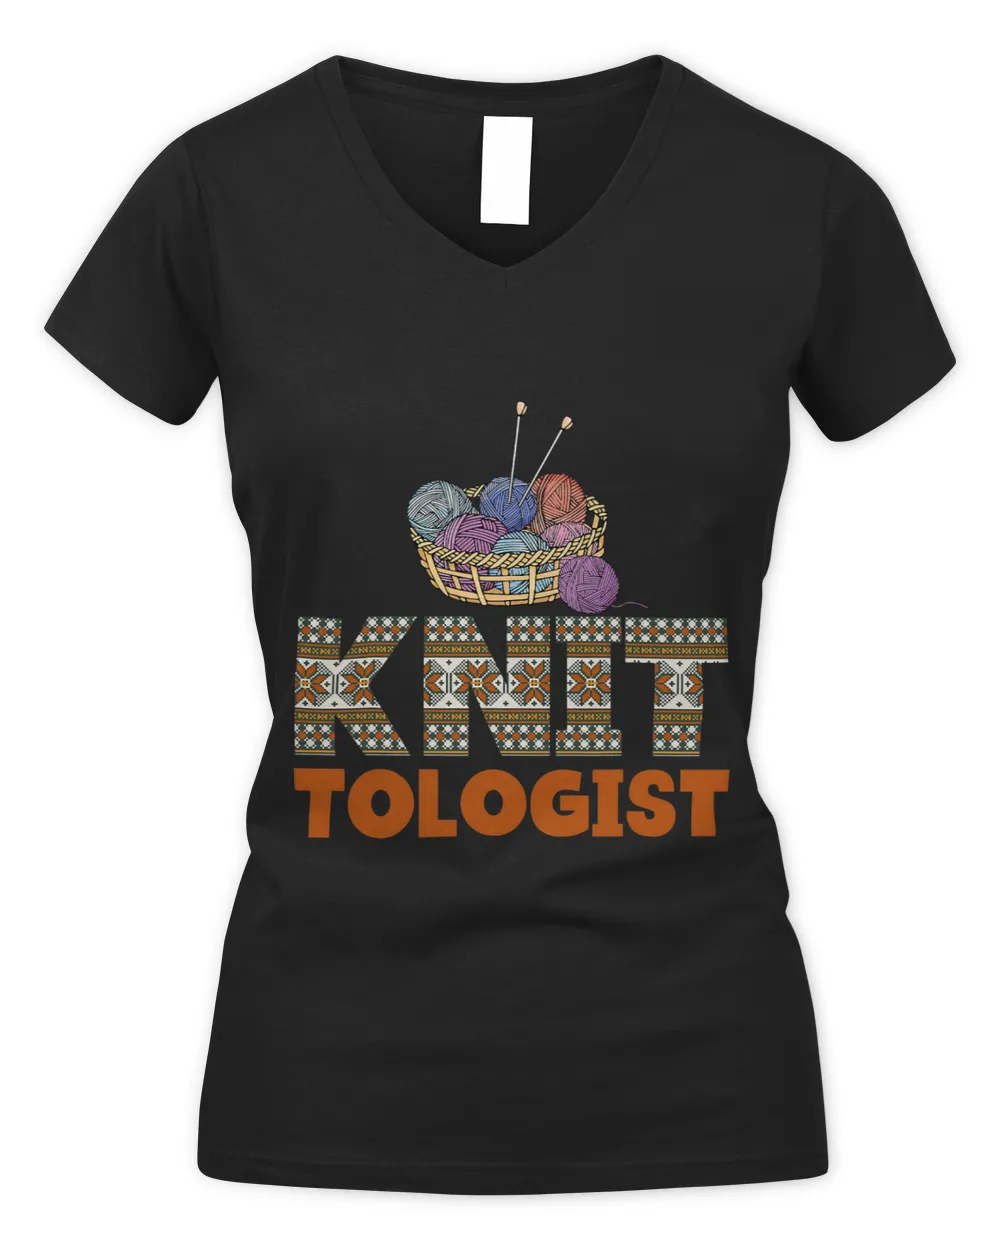 Knitting Knitter Knit Tologist